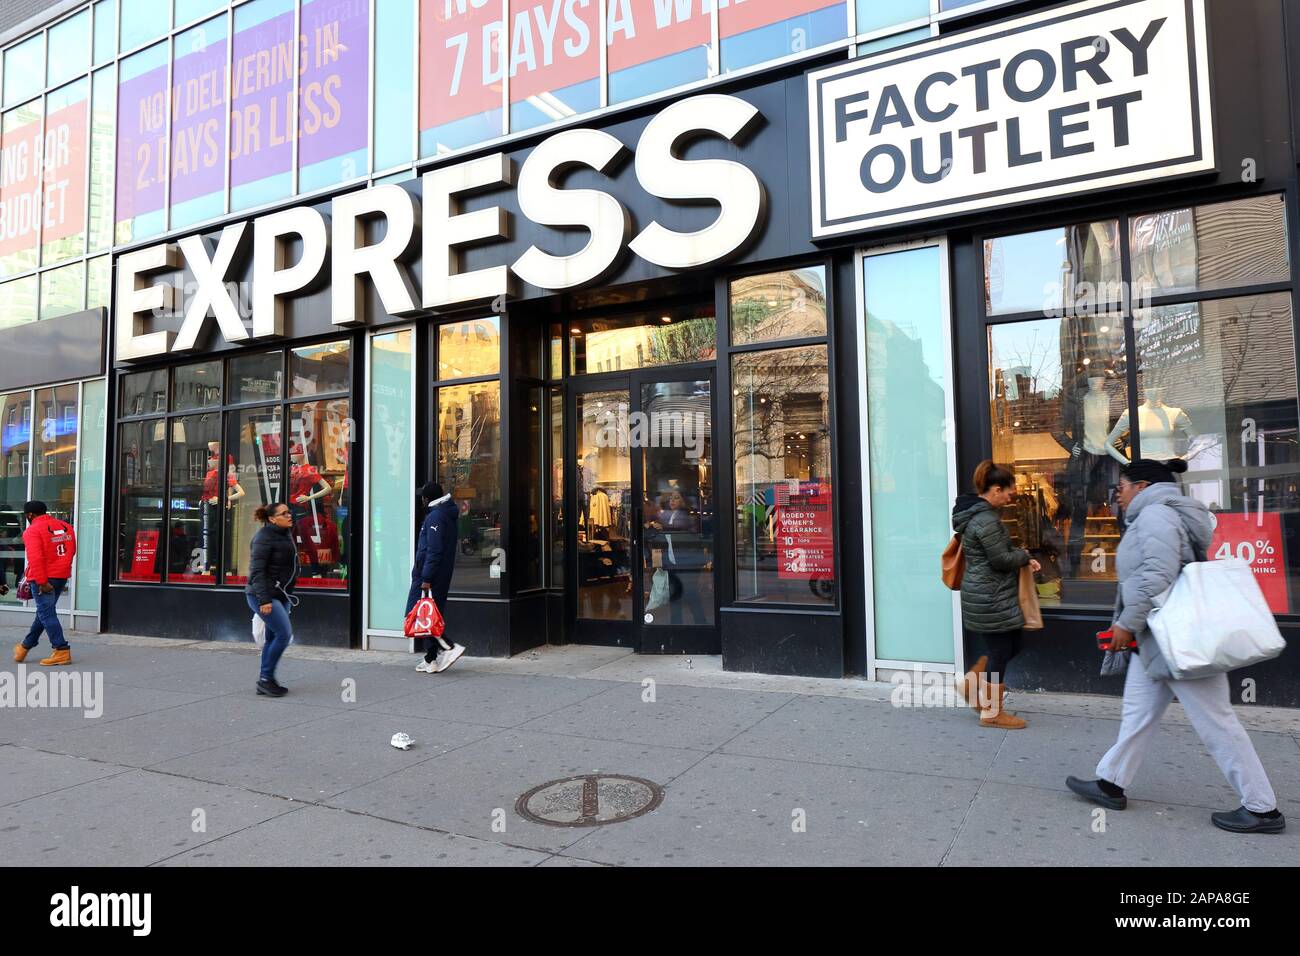 Express Factory Outlet, 490 Fulton St, Brooklyn, New York. NYC-Schaufensterfoto eines zeitgenössischen Bekleidungsladens in Downtown Brooklyn, New York, NY. Stockfoto